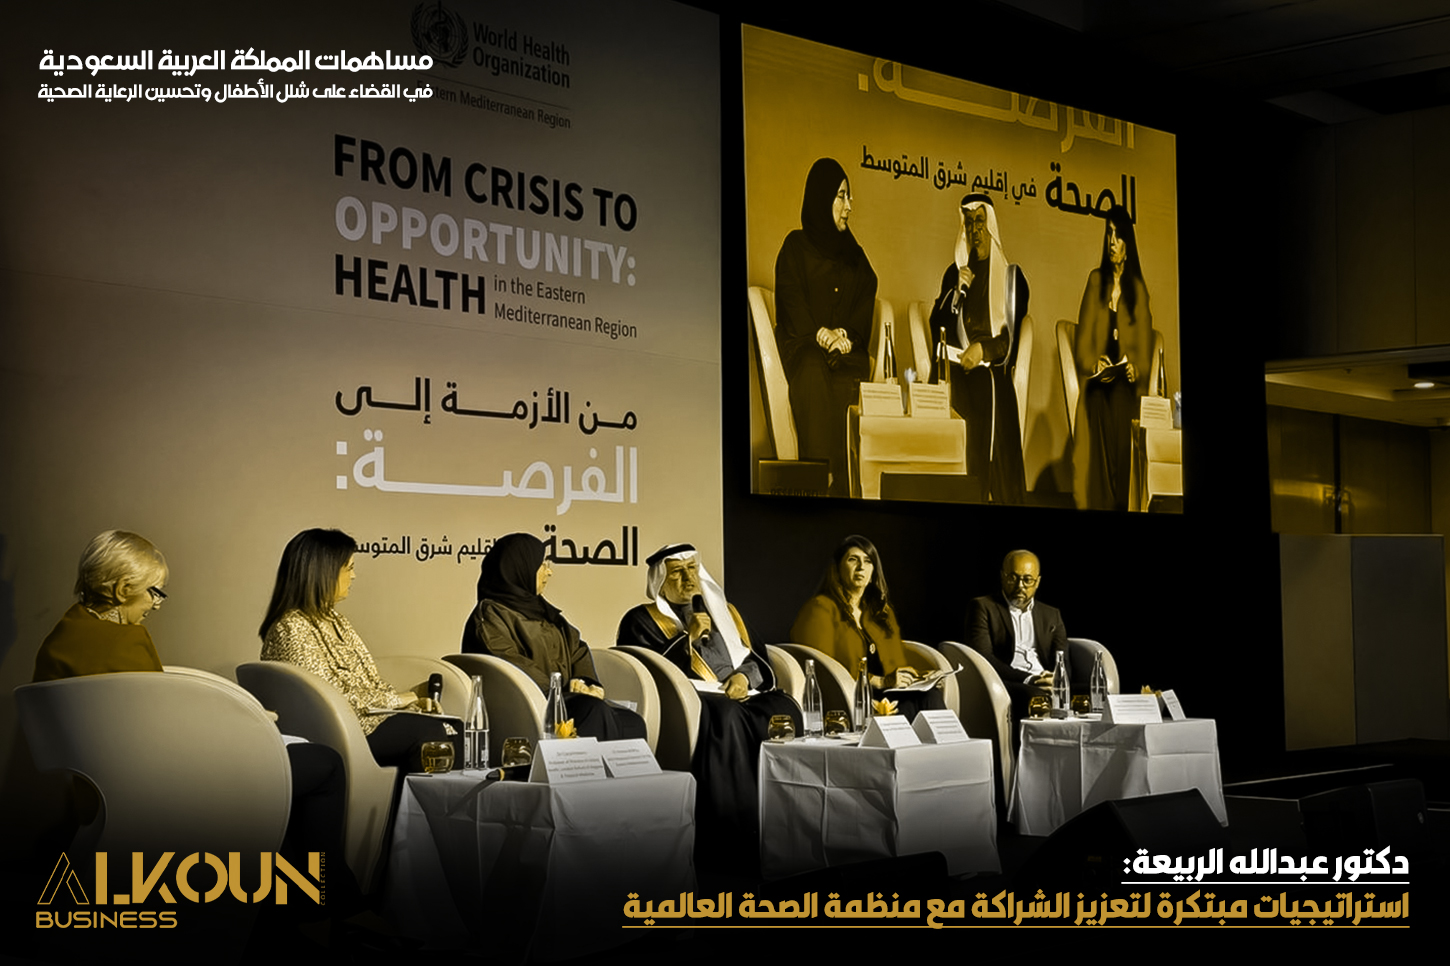 دكتور عبدالله الربيعة: استراتيجيات مبتكرة لتعزيز الشراكة مع منظمة الصحة العالمية